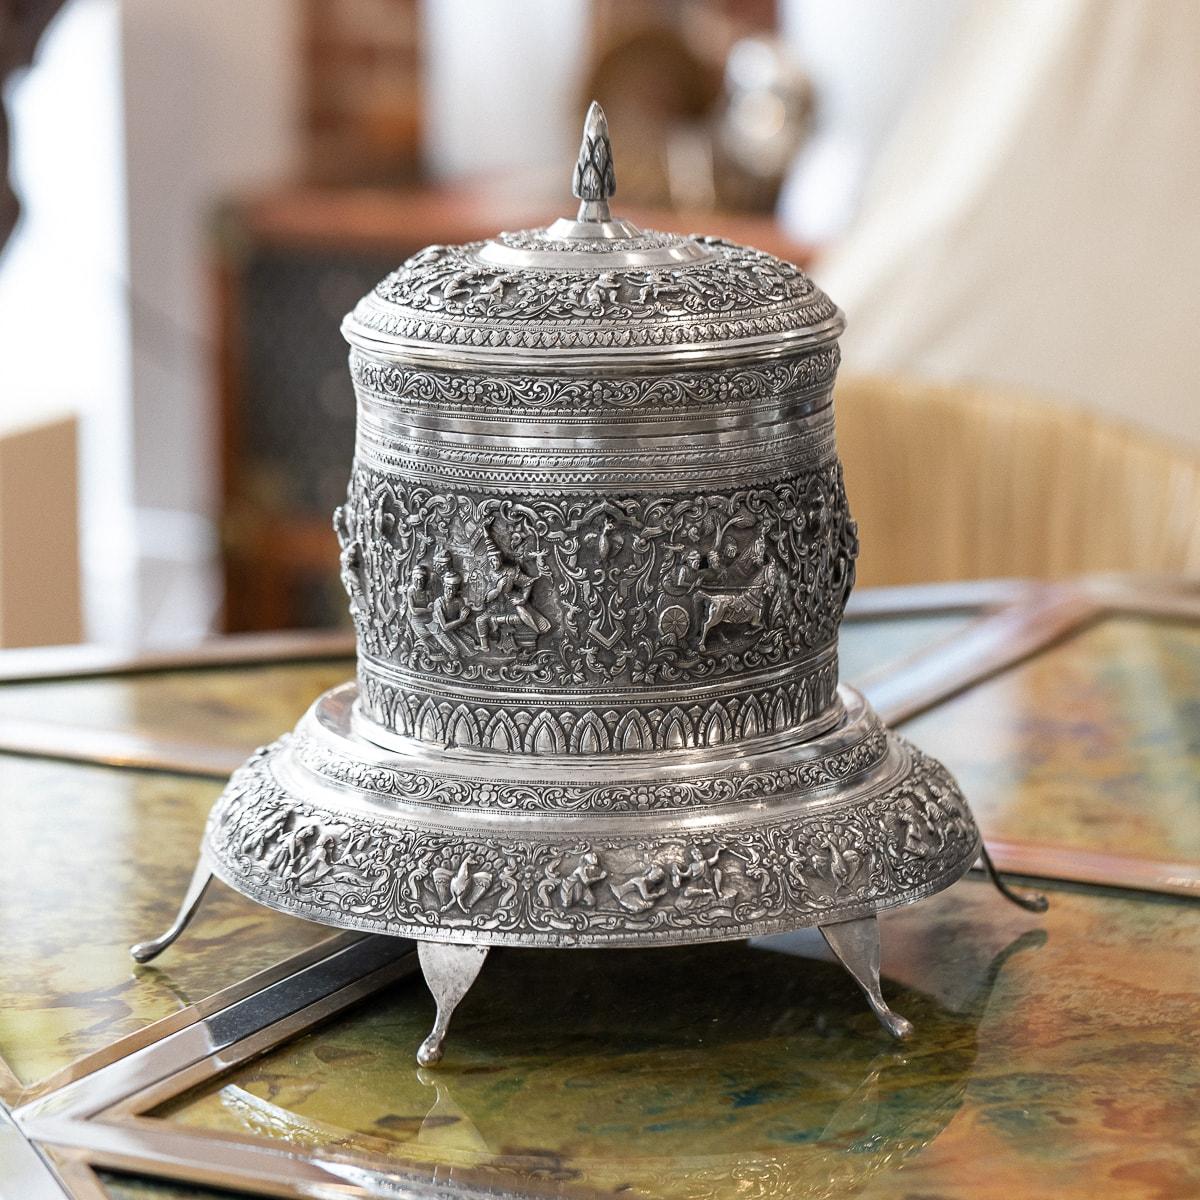 19. Jh. Burmesische (Myanmar) Beteldose aus massivem Silber auf Ständer, traditionelle Form, hochdekorativ, jedes Teil ist in Hochrelief mit verschiedenen Szenen aus der burmesischen Folklore und dem Buddhismus in Form von Reserven ziseliert,